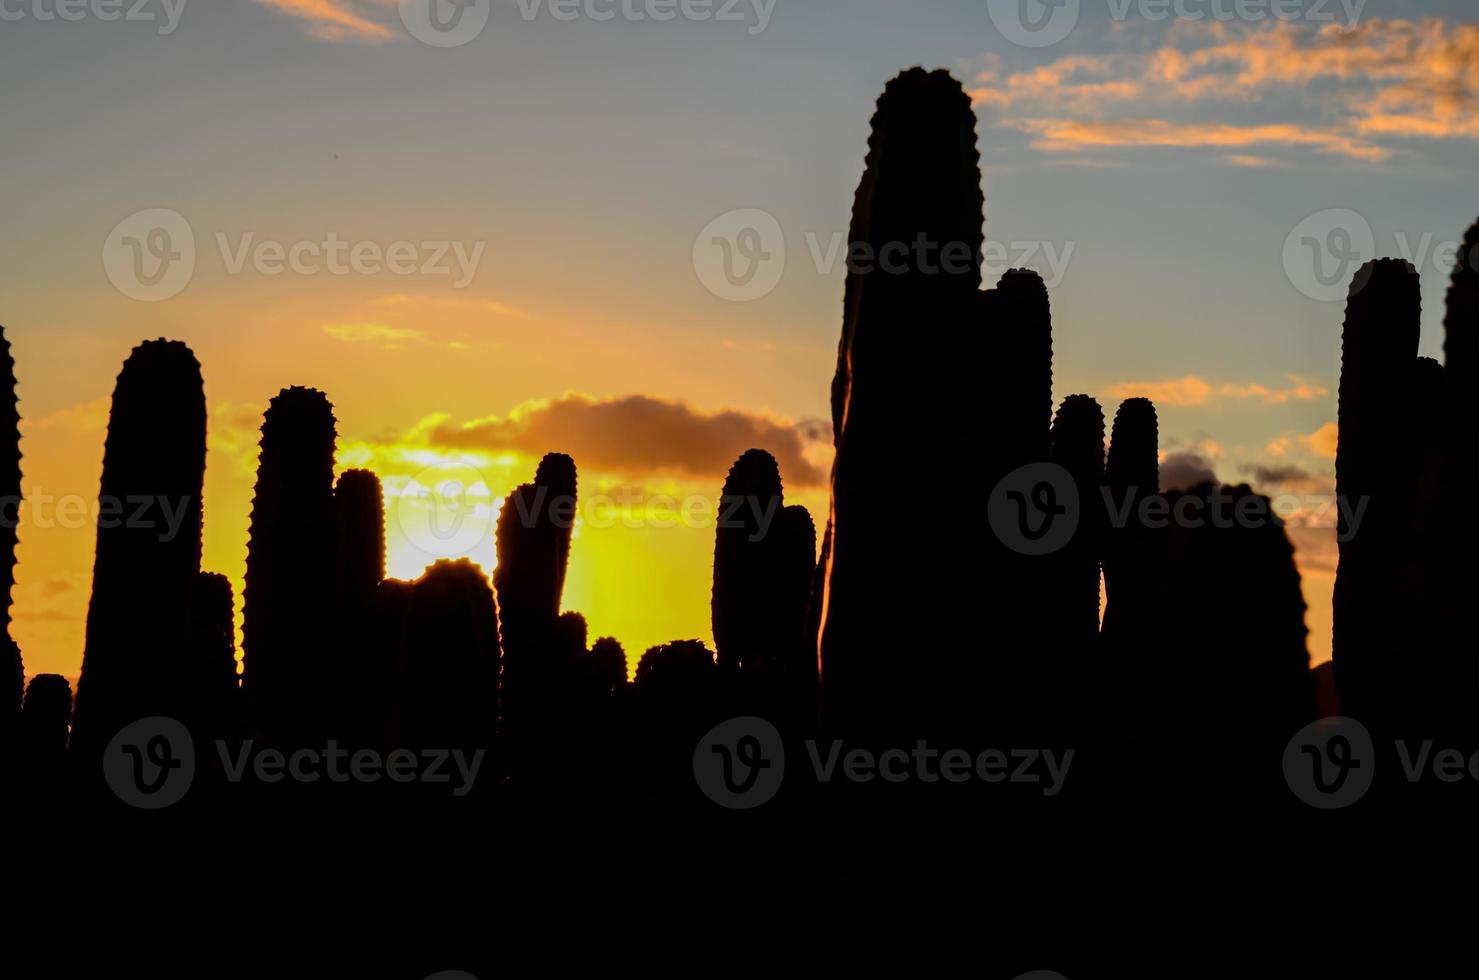 Nature vegetation with cacti photo